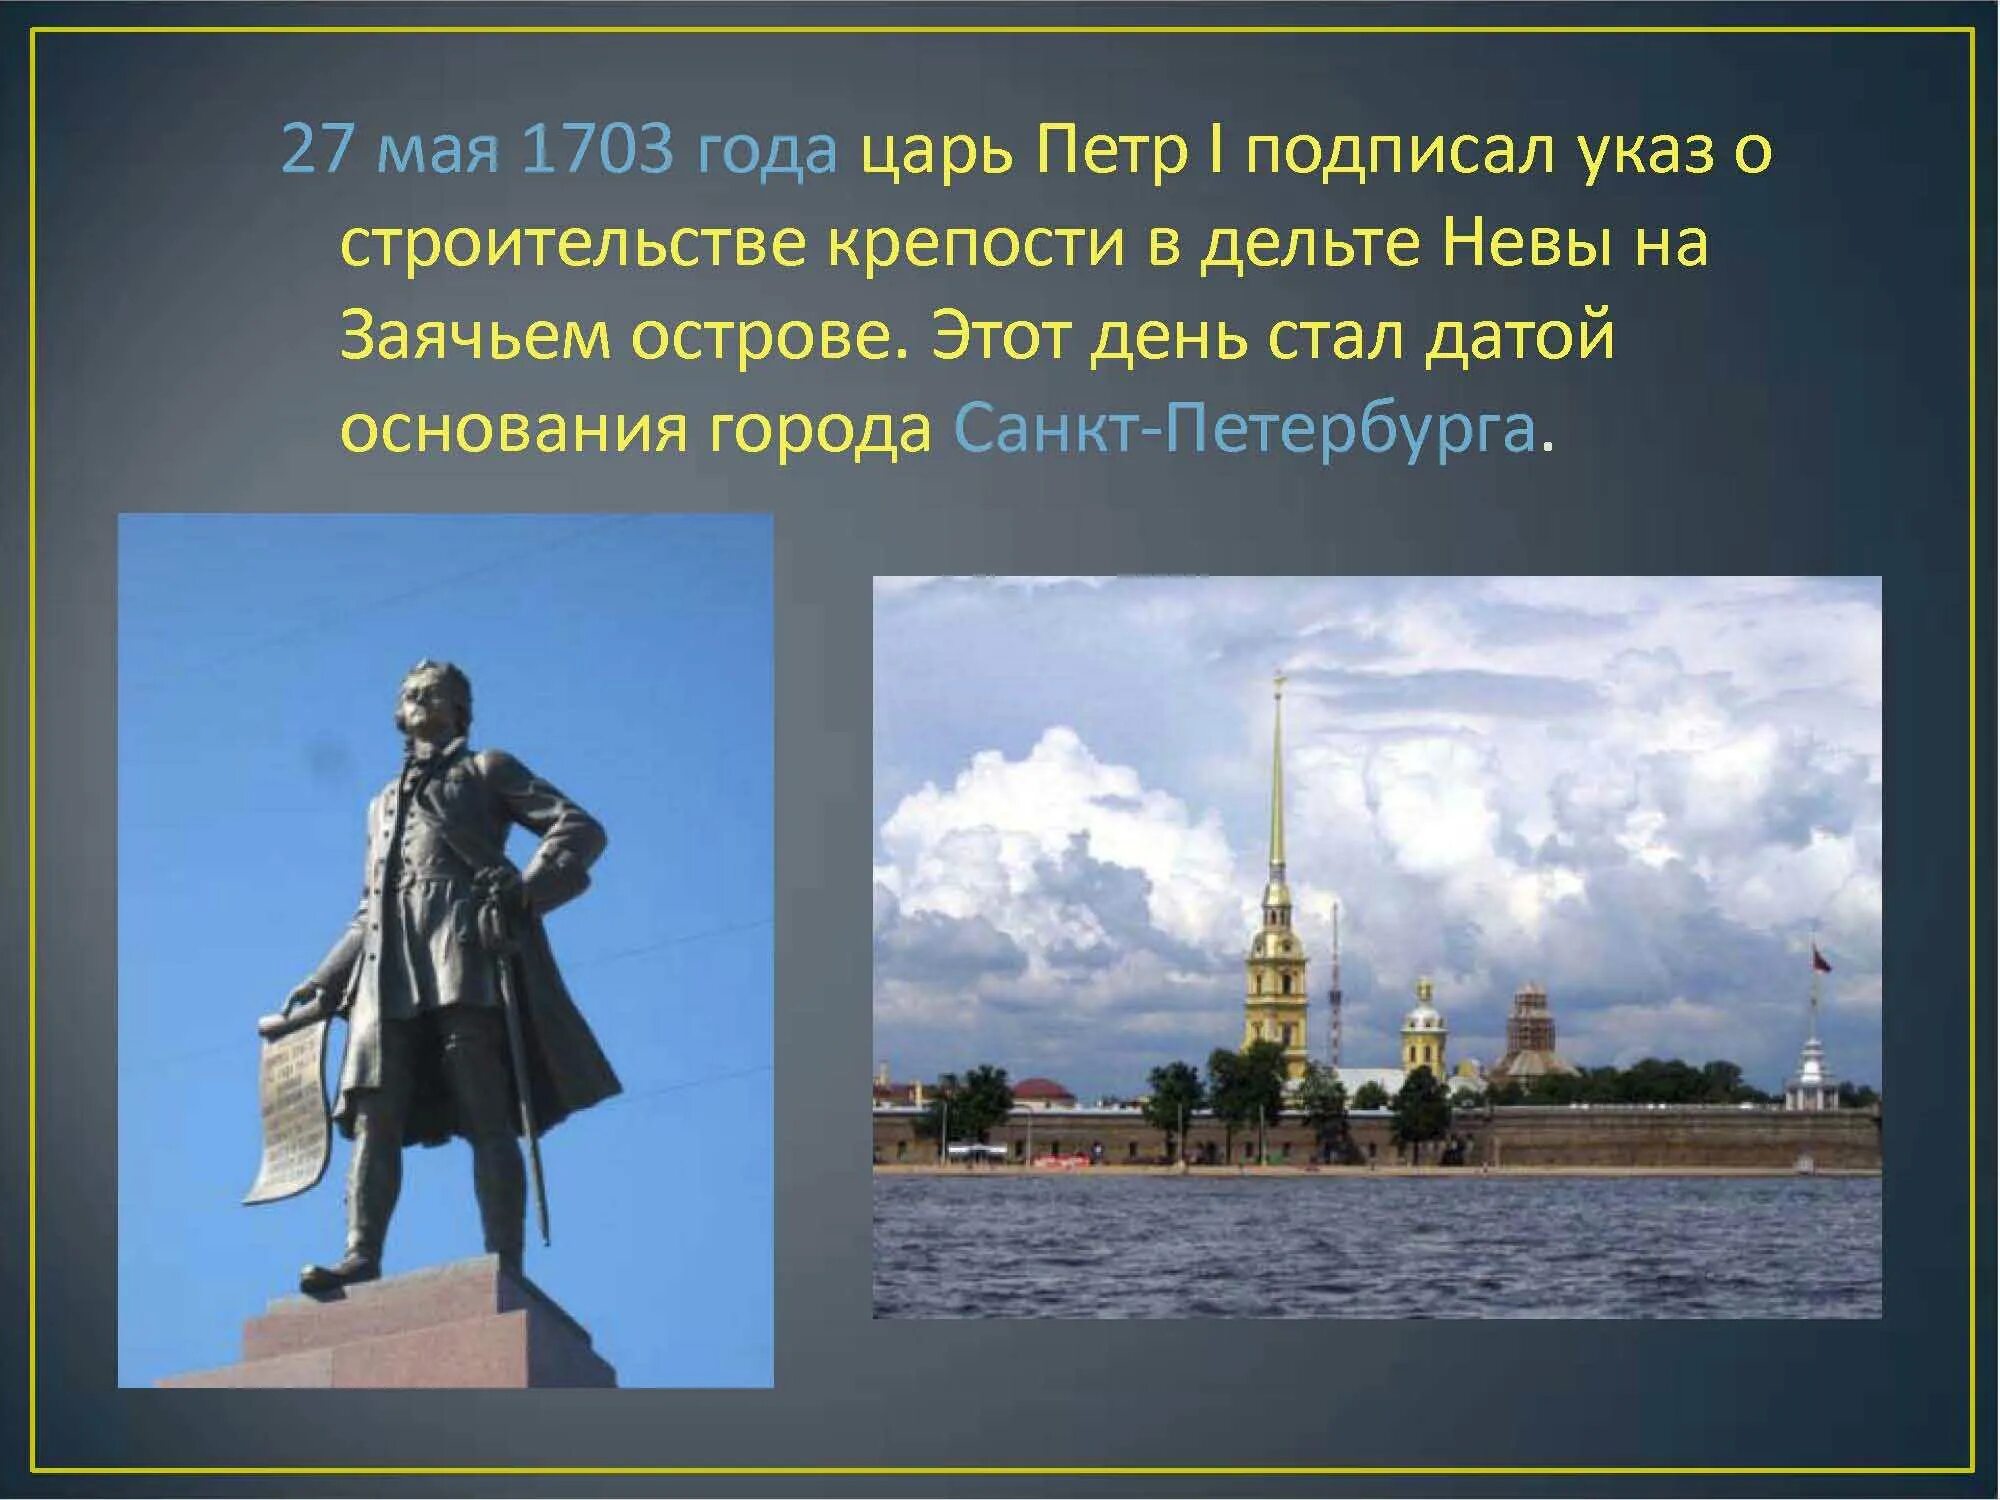 Петербург основан. 27 Мая 1703 года день основания Петром 1 города Санкт-Петербург.